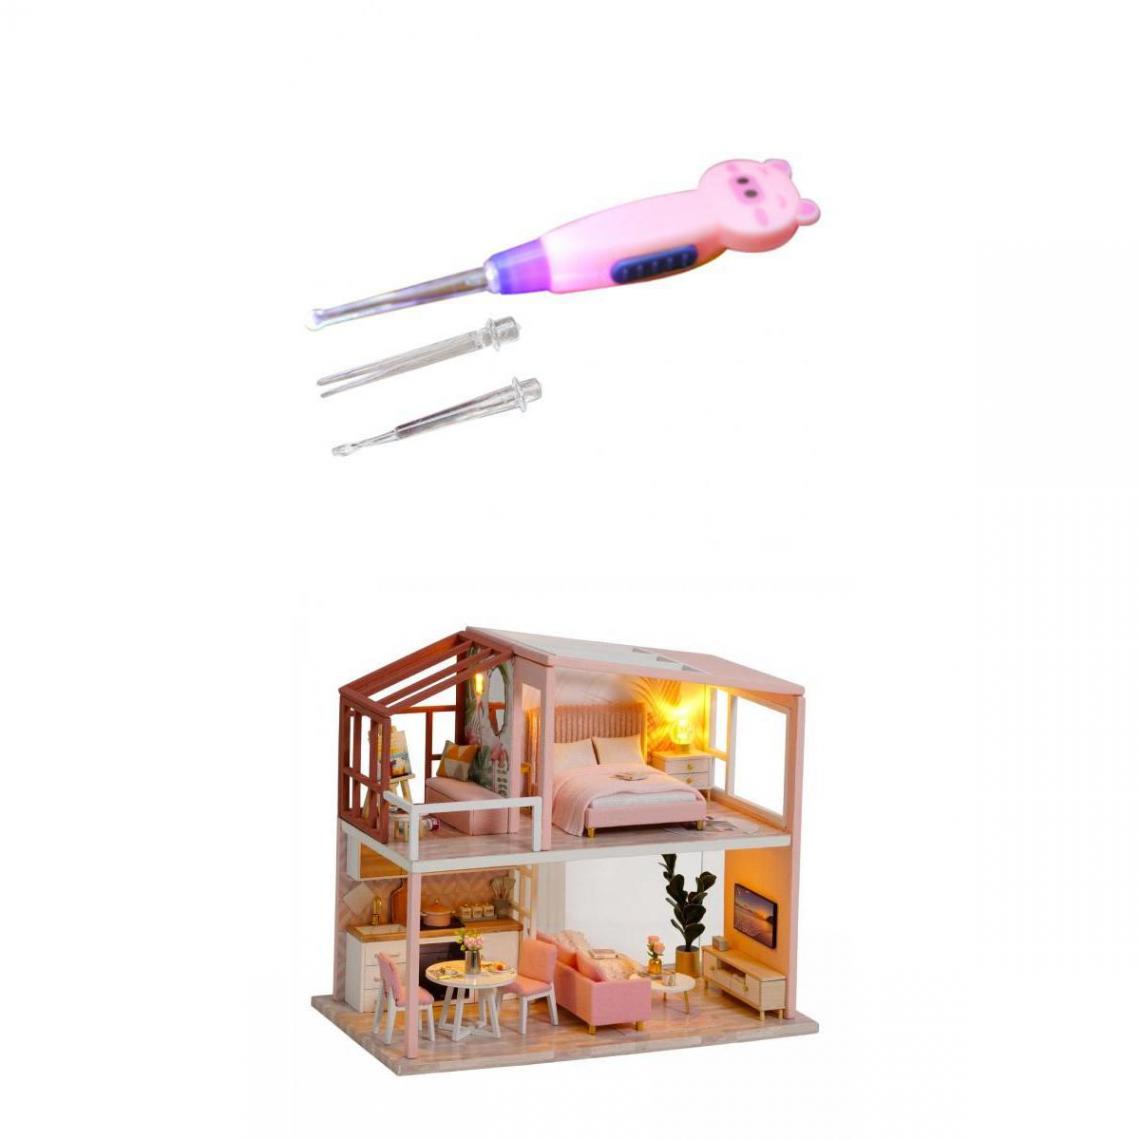 marque generique - 1/24 échelle Bricolage Maison De Poupée En Bois Miniature Kit De Meubles De Maison De Poupée Style1 - Kit d'expériences